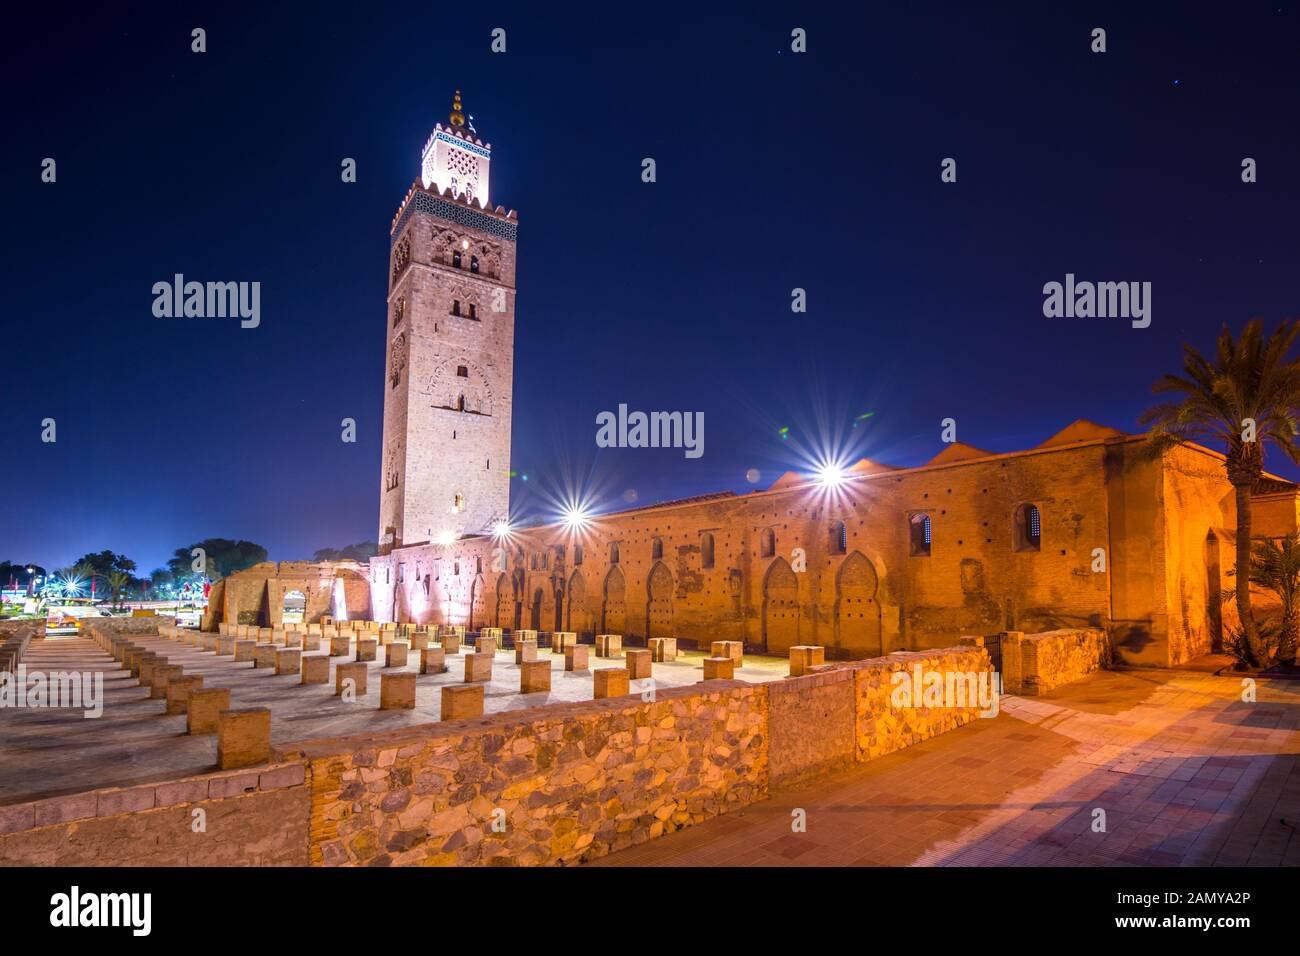 Mosquée de Koutoubia minaret situé au médina de Marrakech, Maroc Banque D'Images